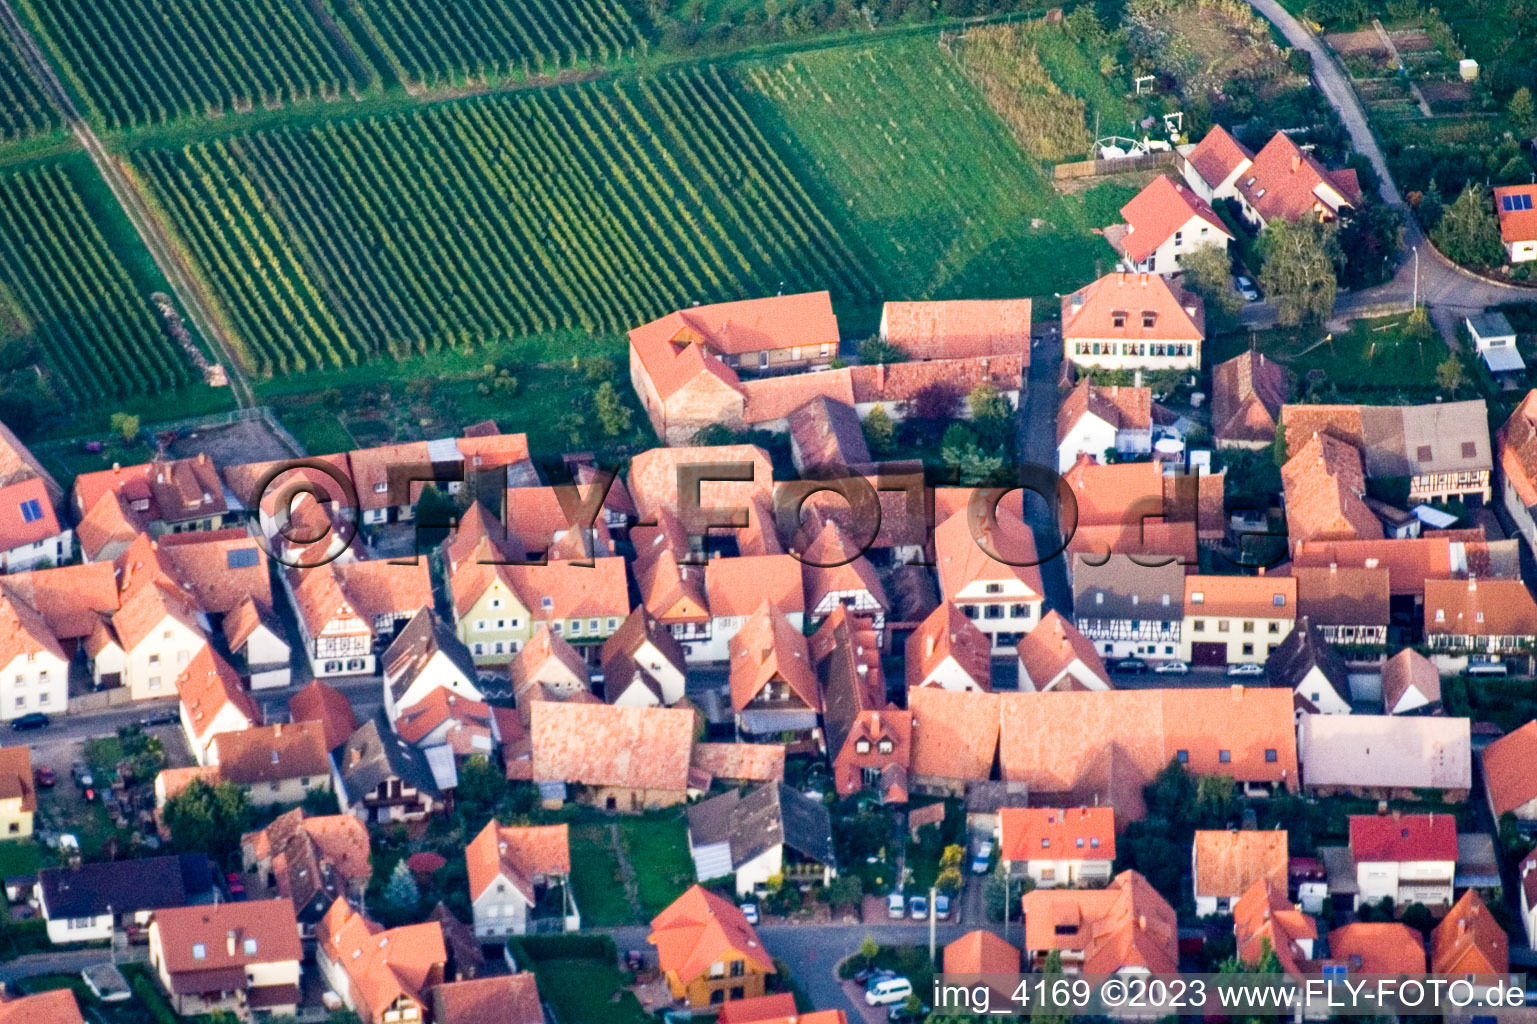 Drone recording of District Schweigen in Schweigen-Rechtenbach in the state Rhineland-Palatinate, Germany